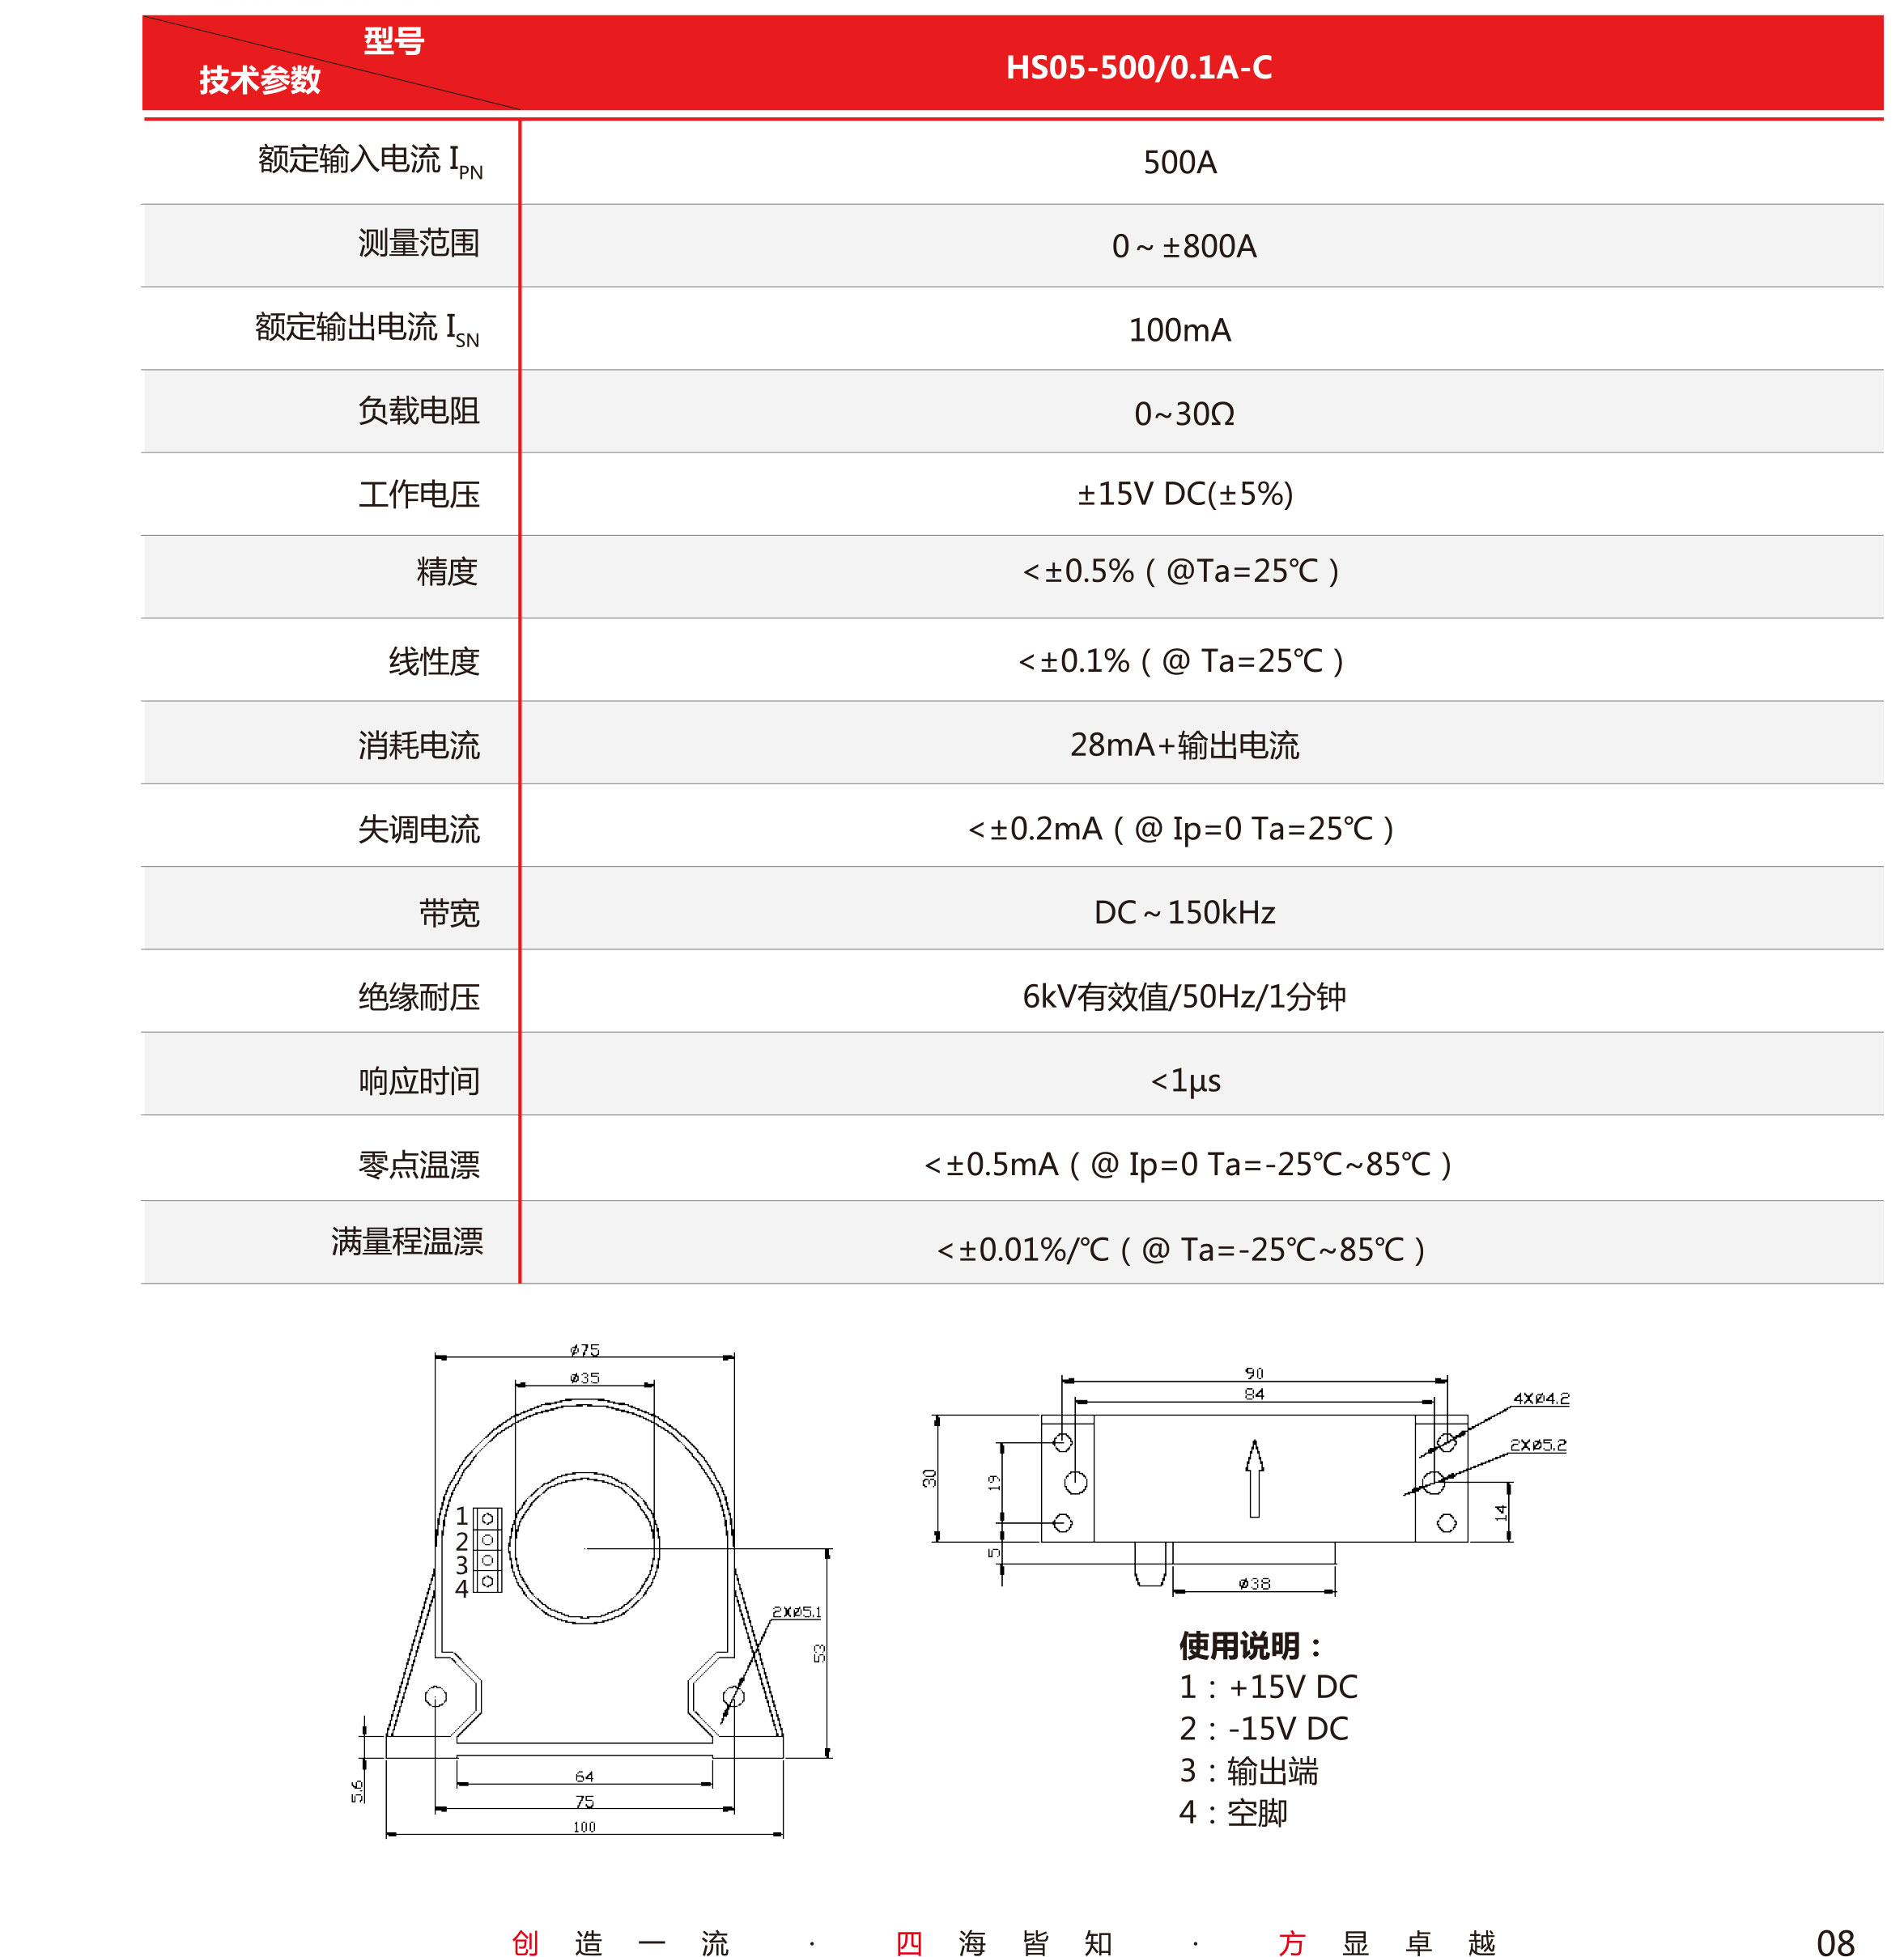 5传感器-V5-2019-北京-单页-9.jpg